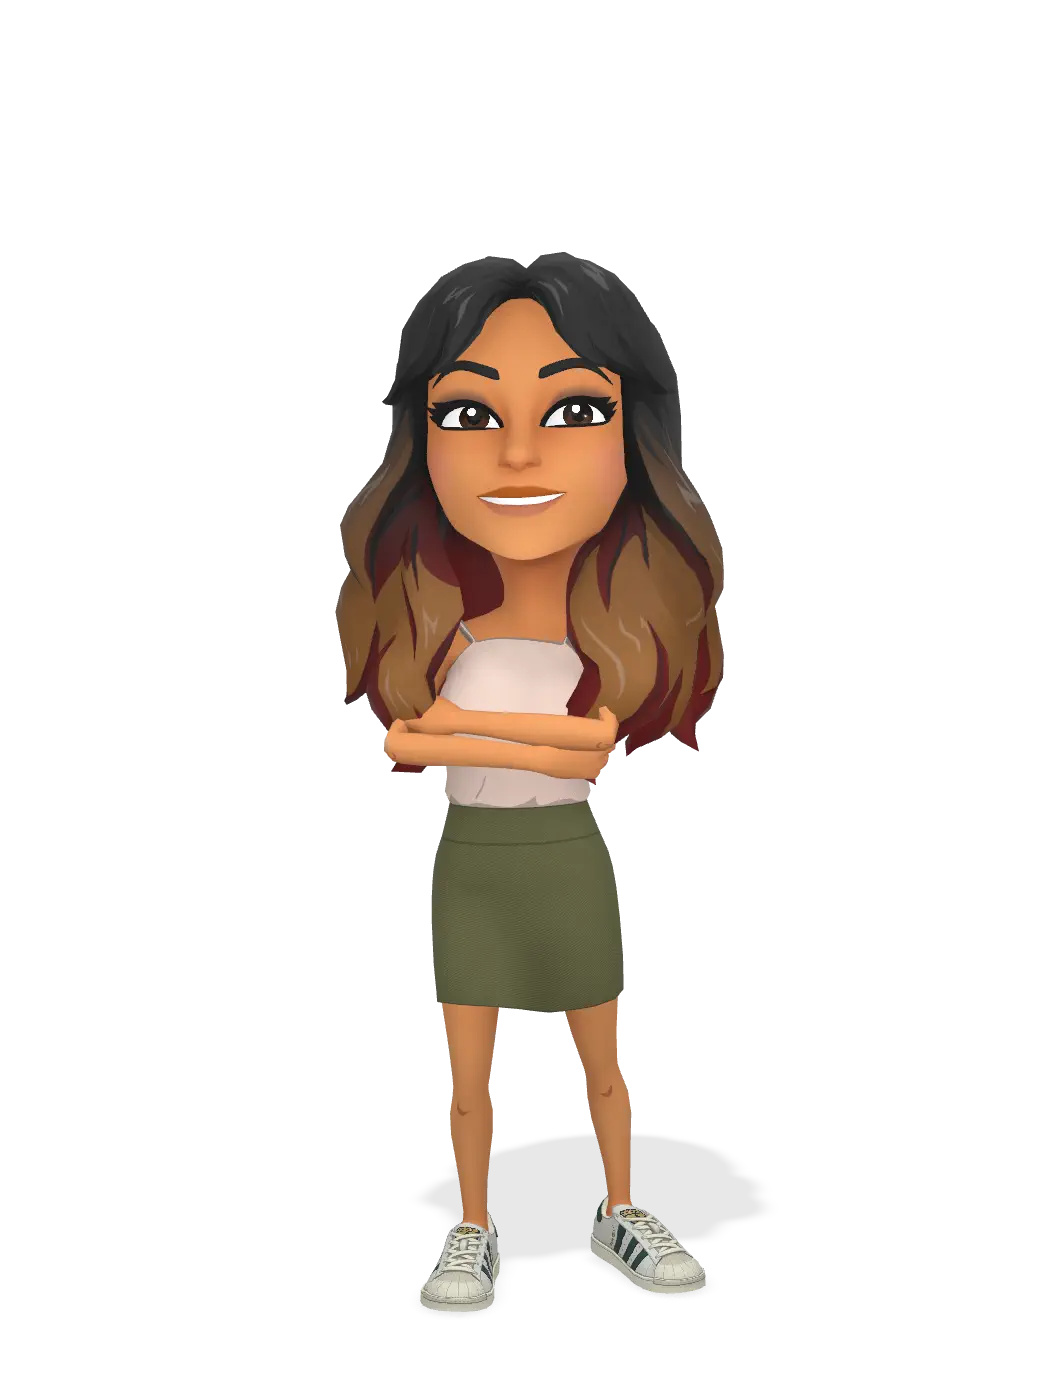 3D Bitmoji for christinajadee avatar